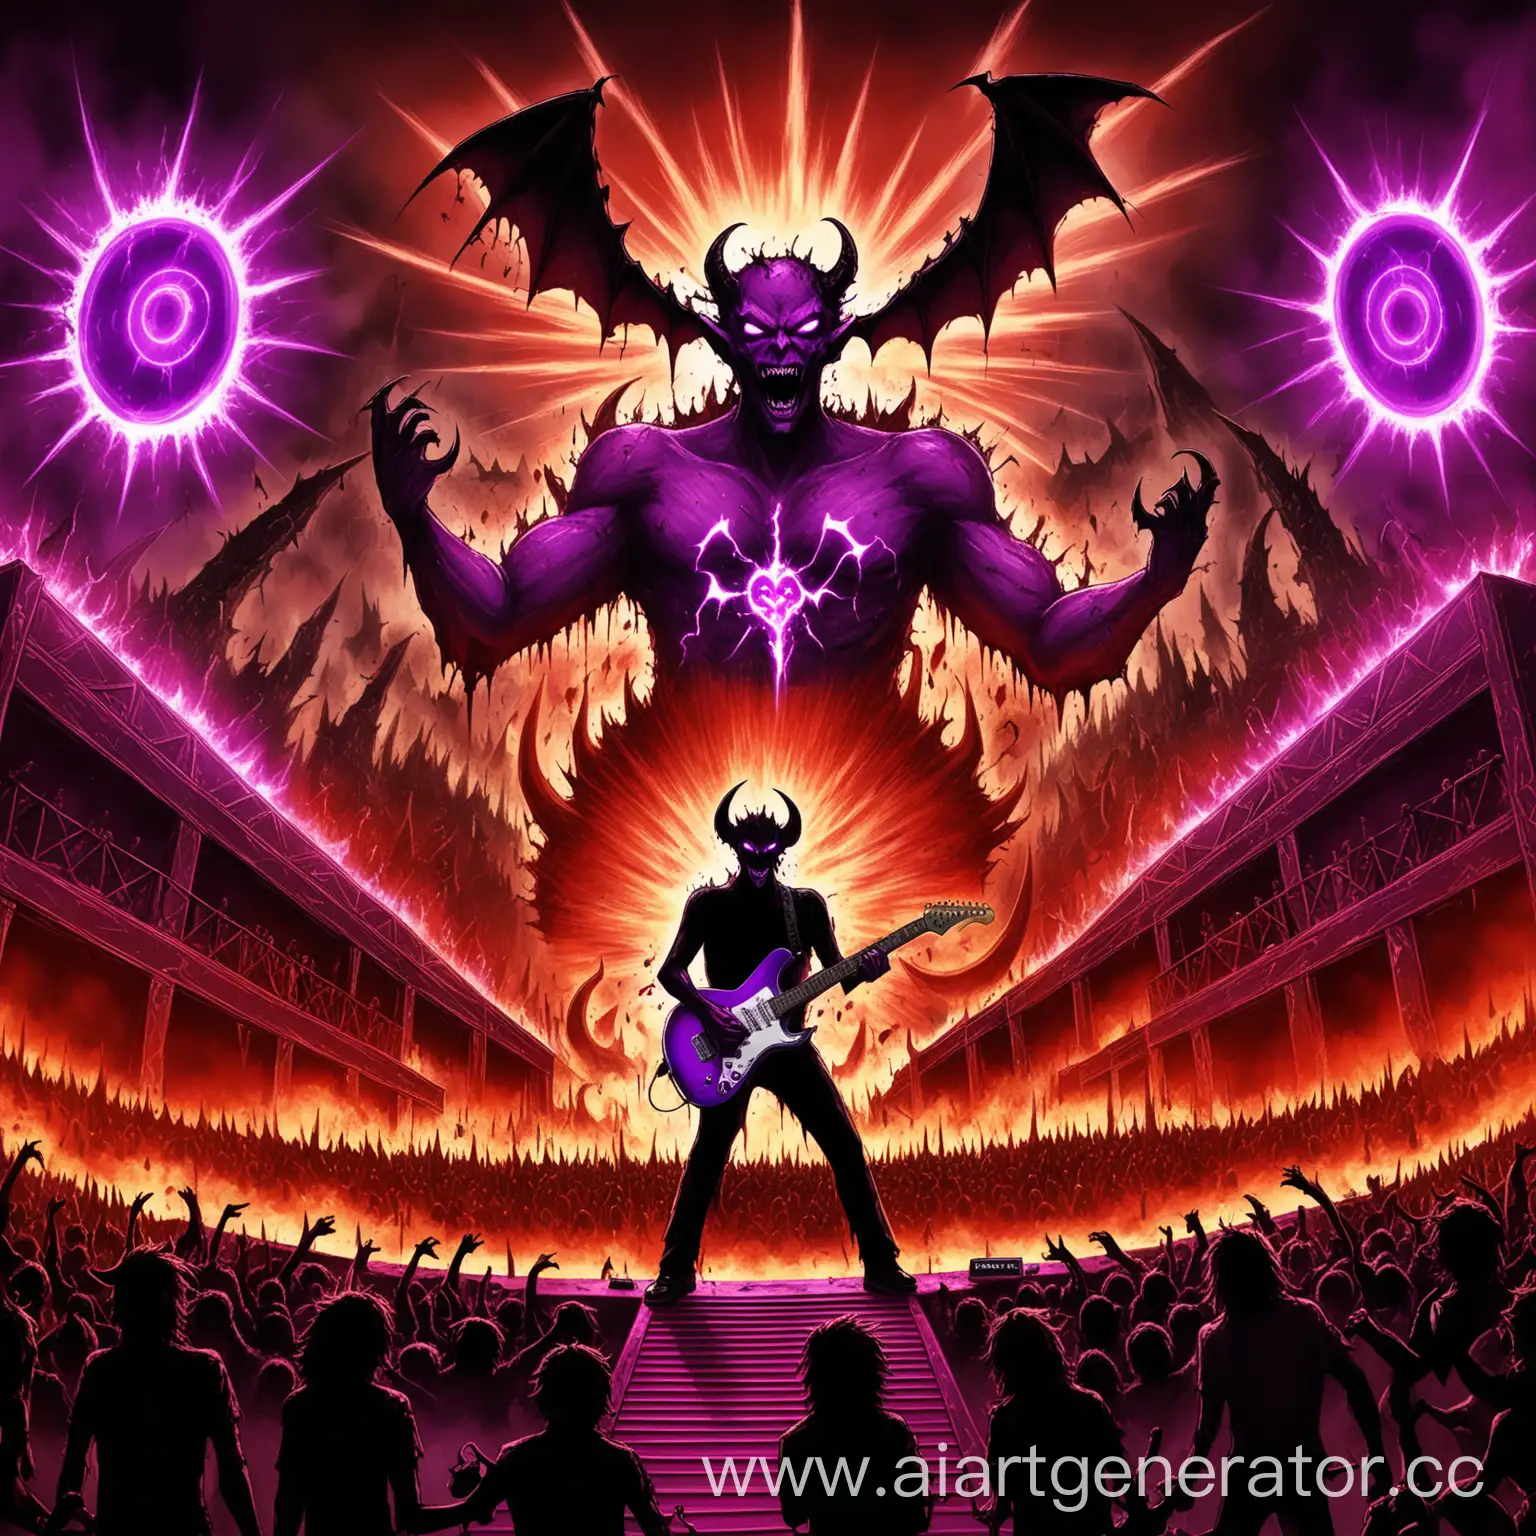 Демон с электрогитарой стоит на кровавой сцене а за сценой эпичные взрывы и большой феолетовый портал. А перед сценой стоит толпа демонов который пригают от музыки 